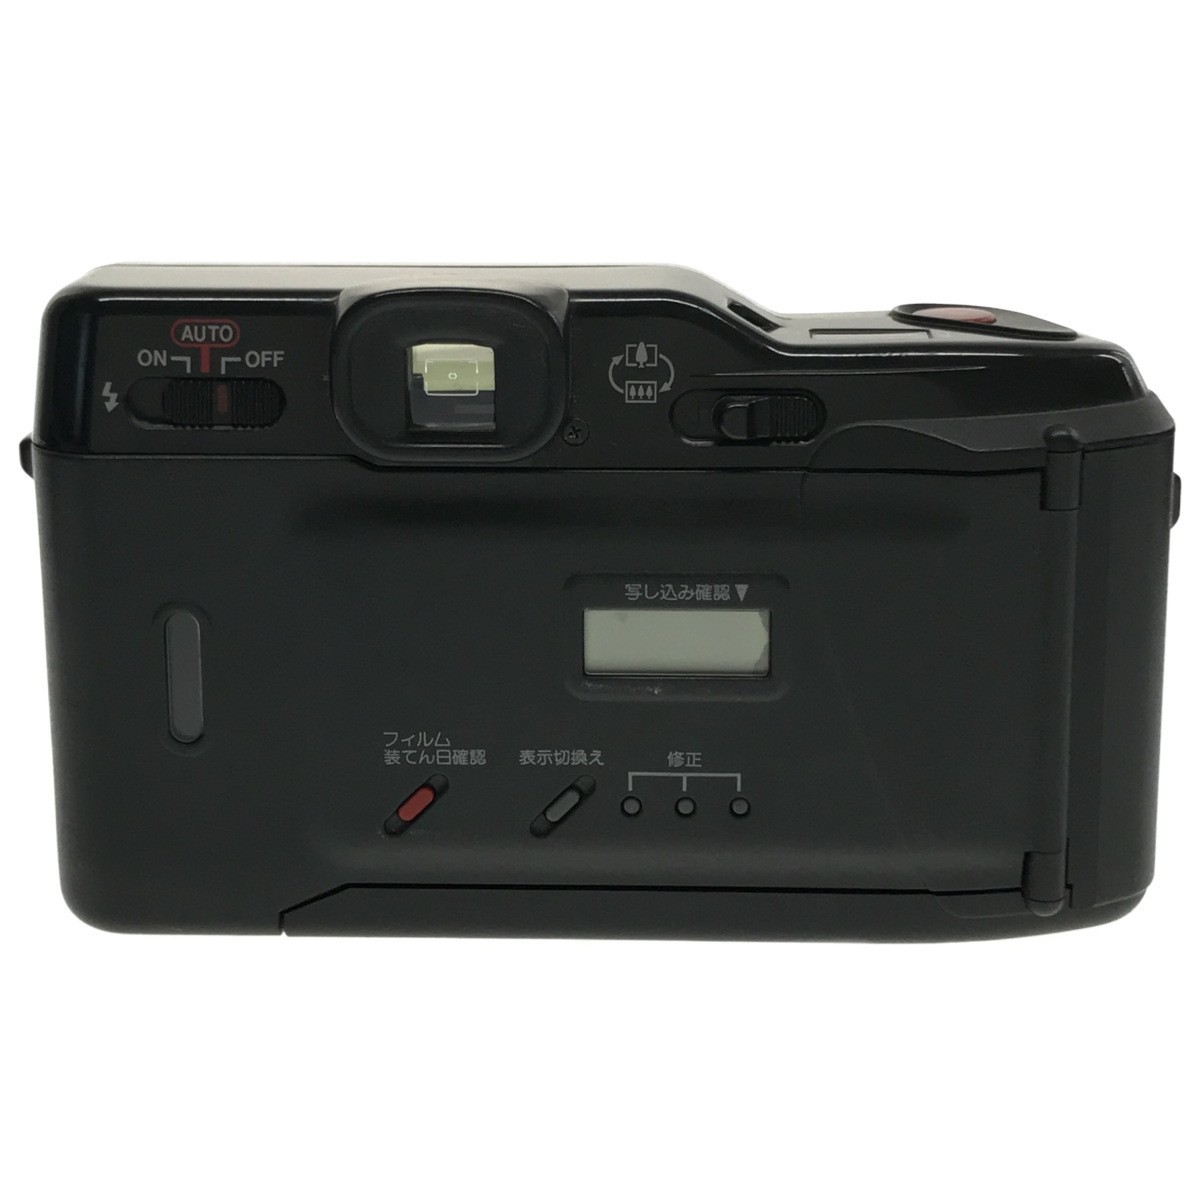 【通電確認済み 3台まとめ】Canon AF35ML + Autoboy 3 + TELE QUARTZ DATE キャノン オートボーイ コンパクトフィルムカメラ 現状品 C3000_画像5